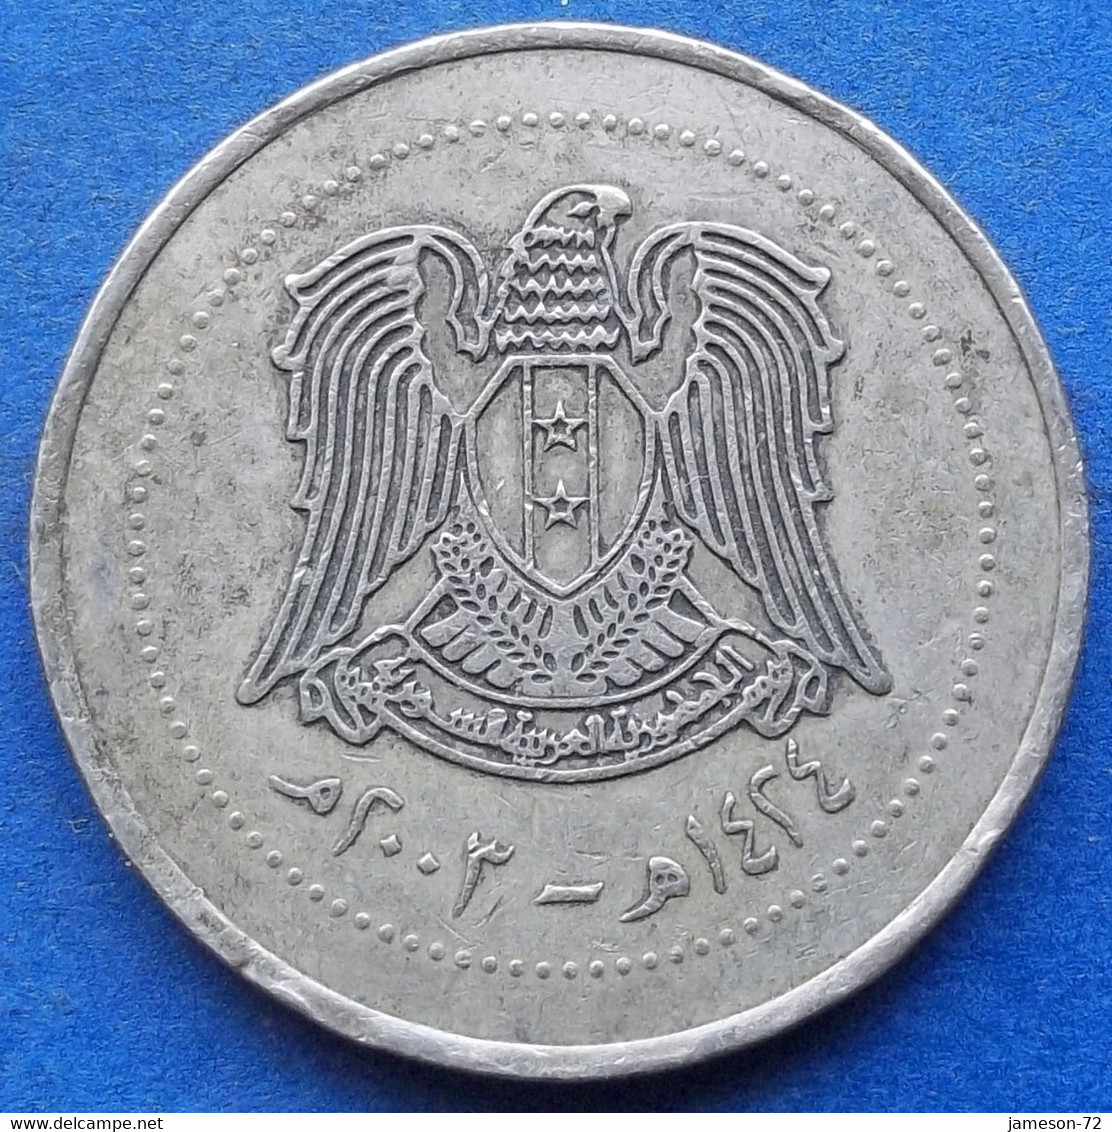 SYRIA - 10 Pounds AH1424 2003AD KM# 130 Arab Republic (1961) - Edelweiss Coins - Siria